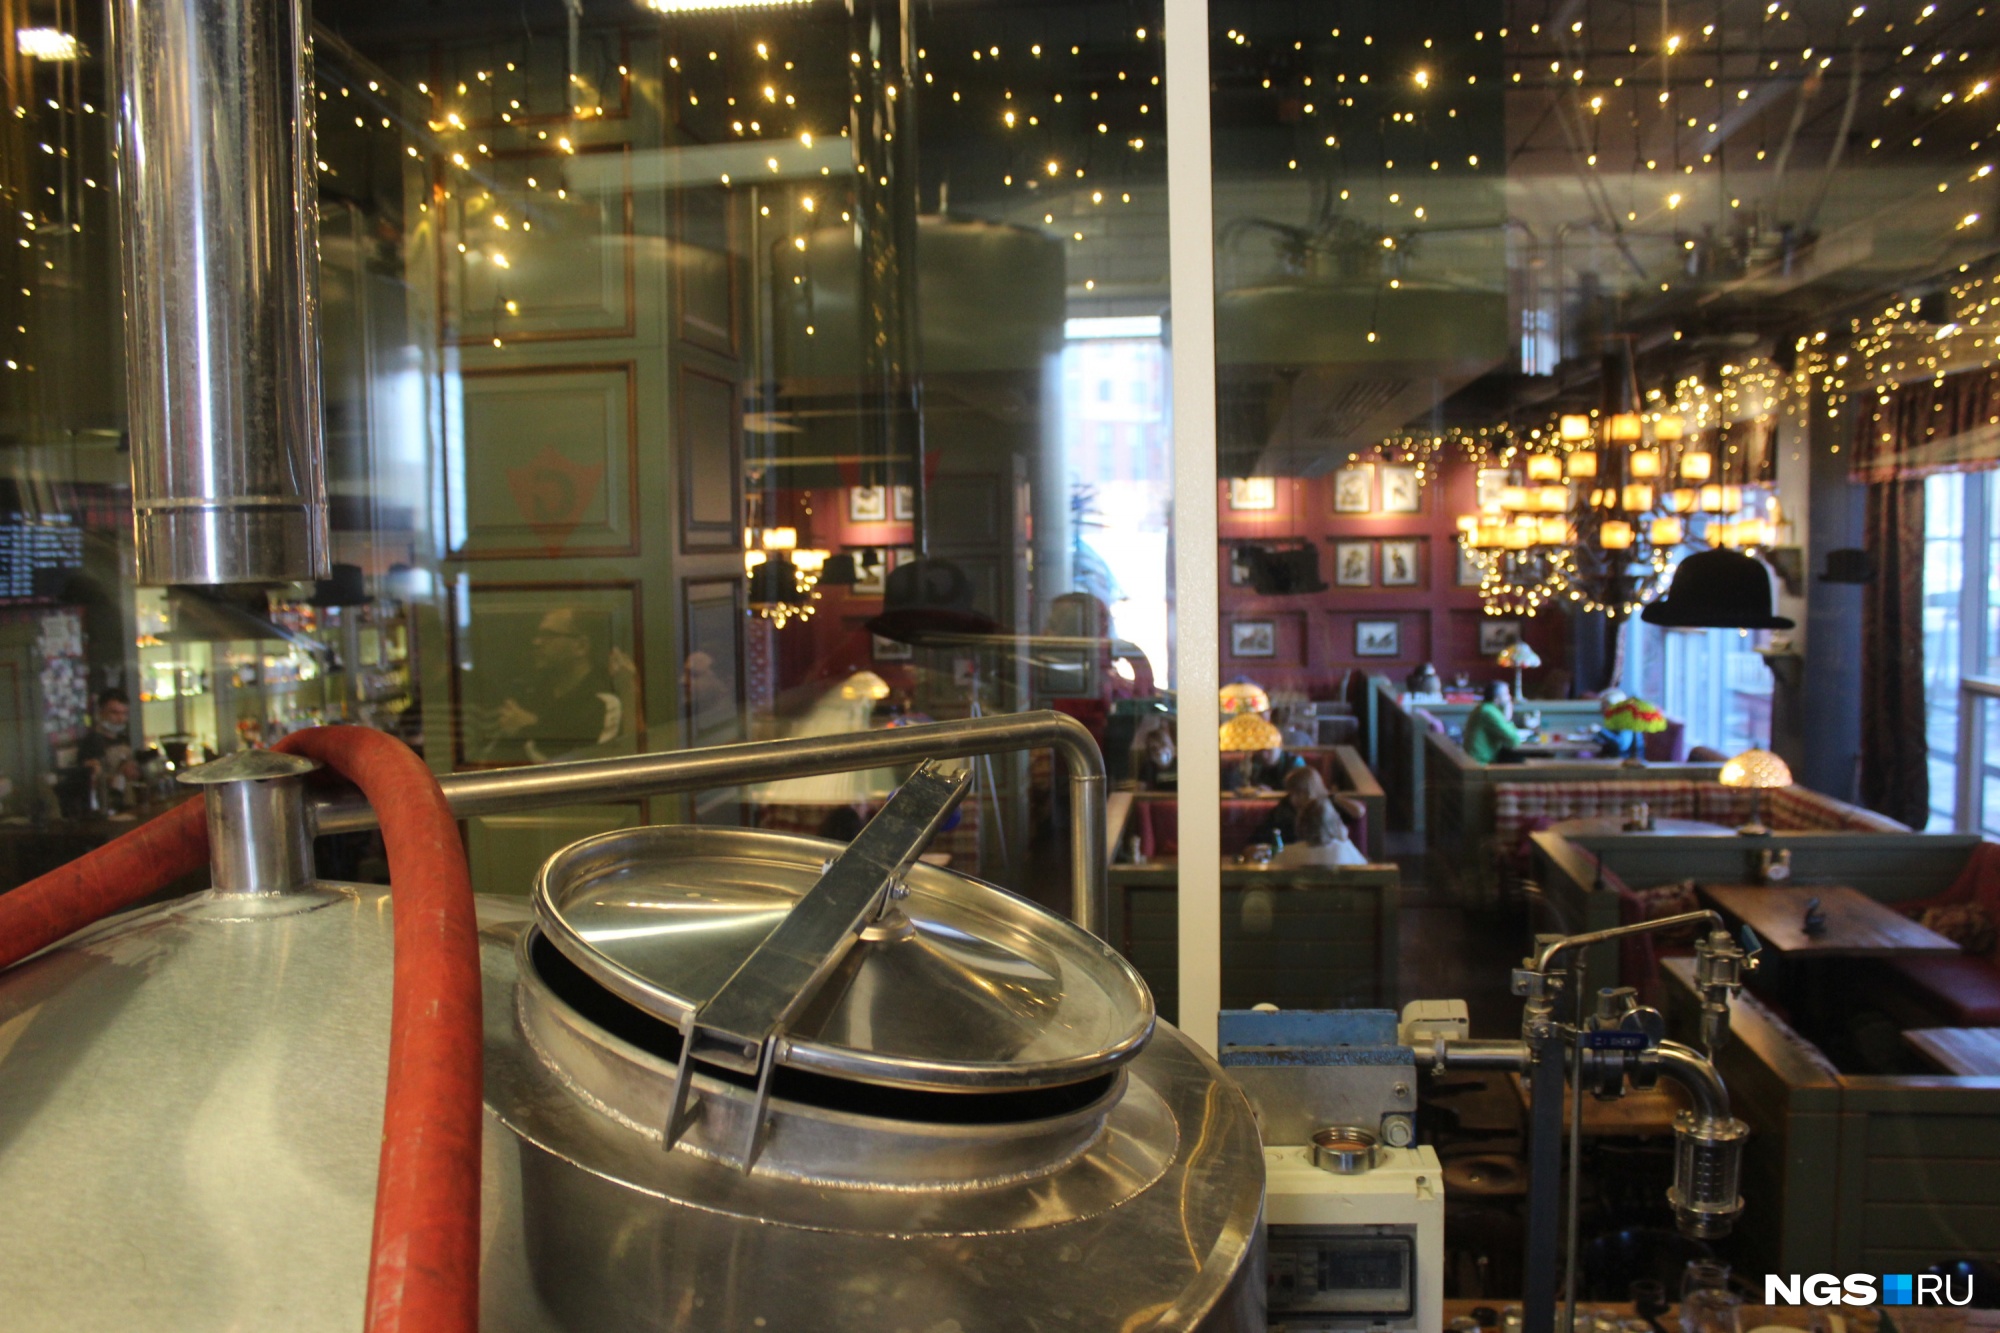 Сочетание пивоварни и бара призвано убедить потребителя в максимальной свежести продукта (на фото вид из помещения пивоварни GUSI на зал ресторана)